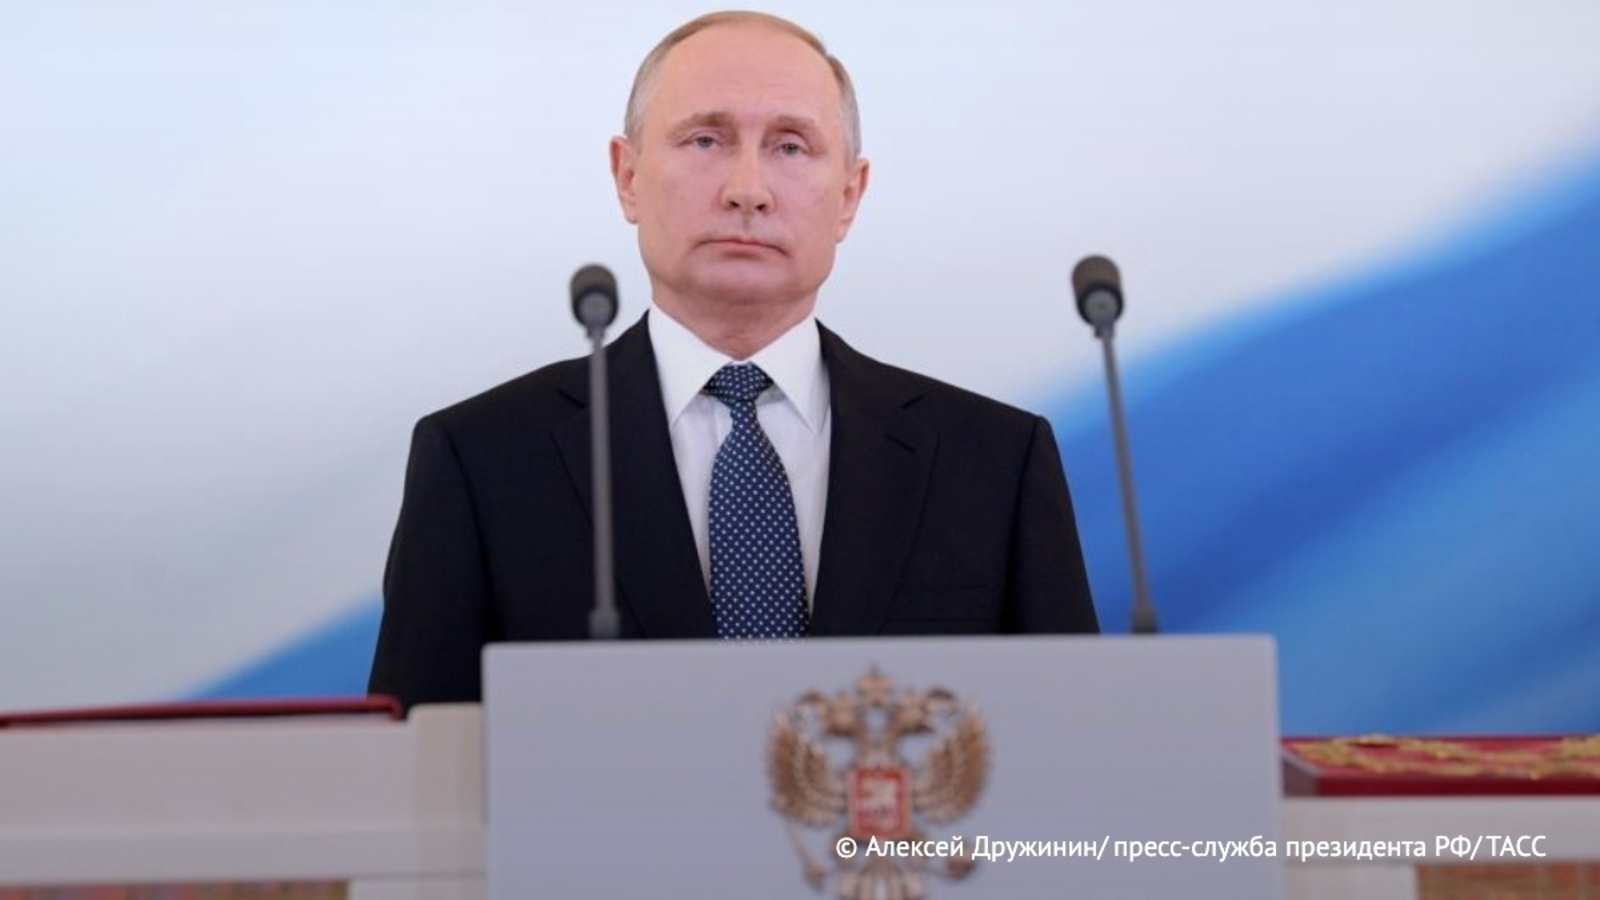 Сенаторы получили приглашение на инаугурацию президента Владимира Путина